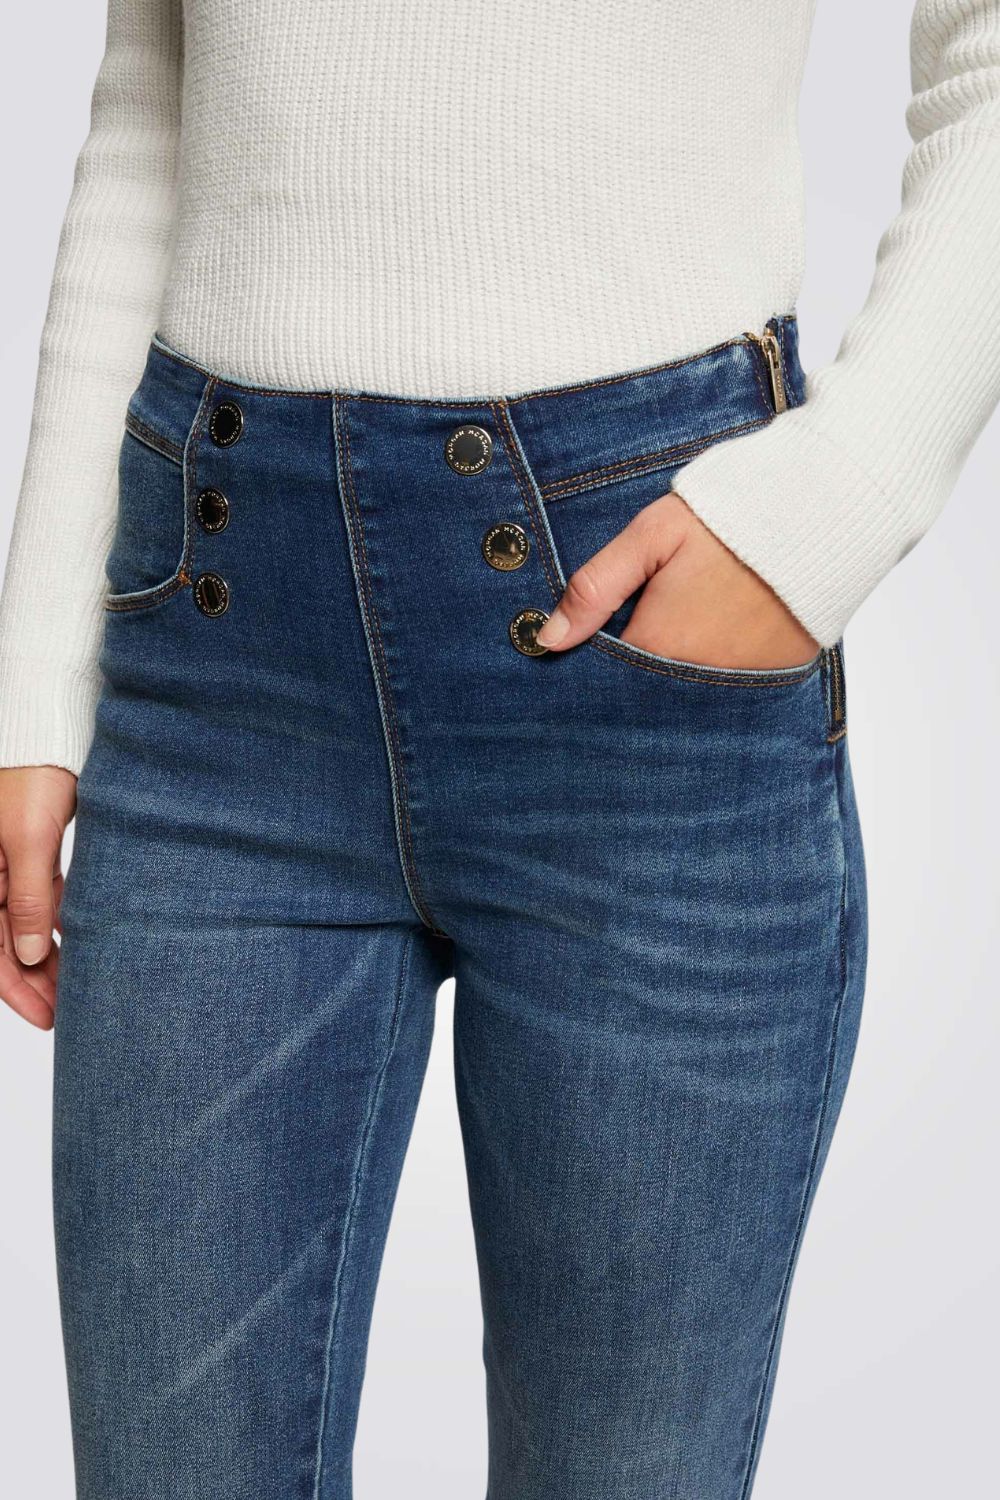 ג'ינס סקיני עם כפתורים בצבע כחול כהה